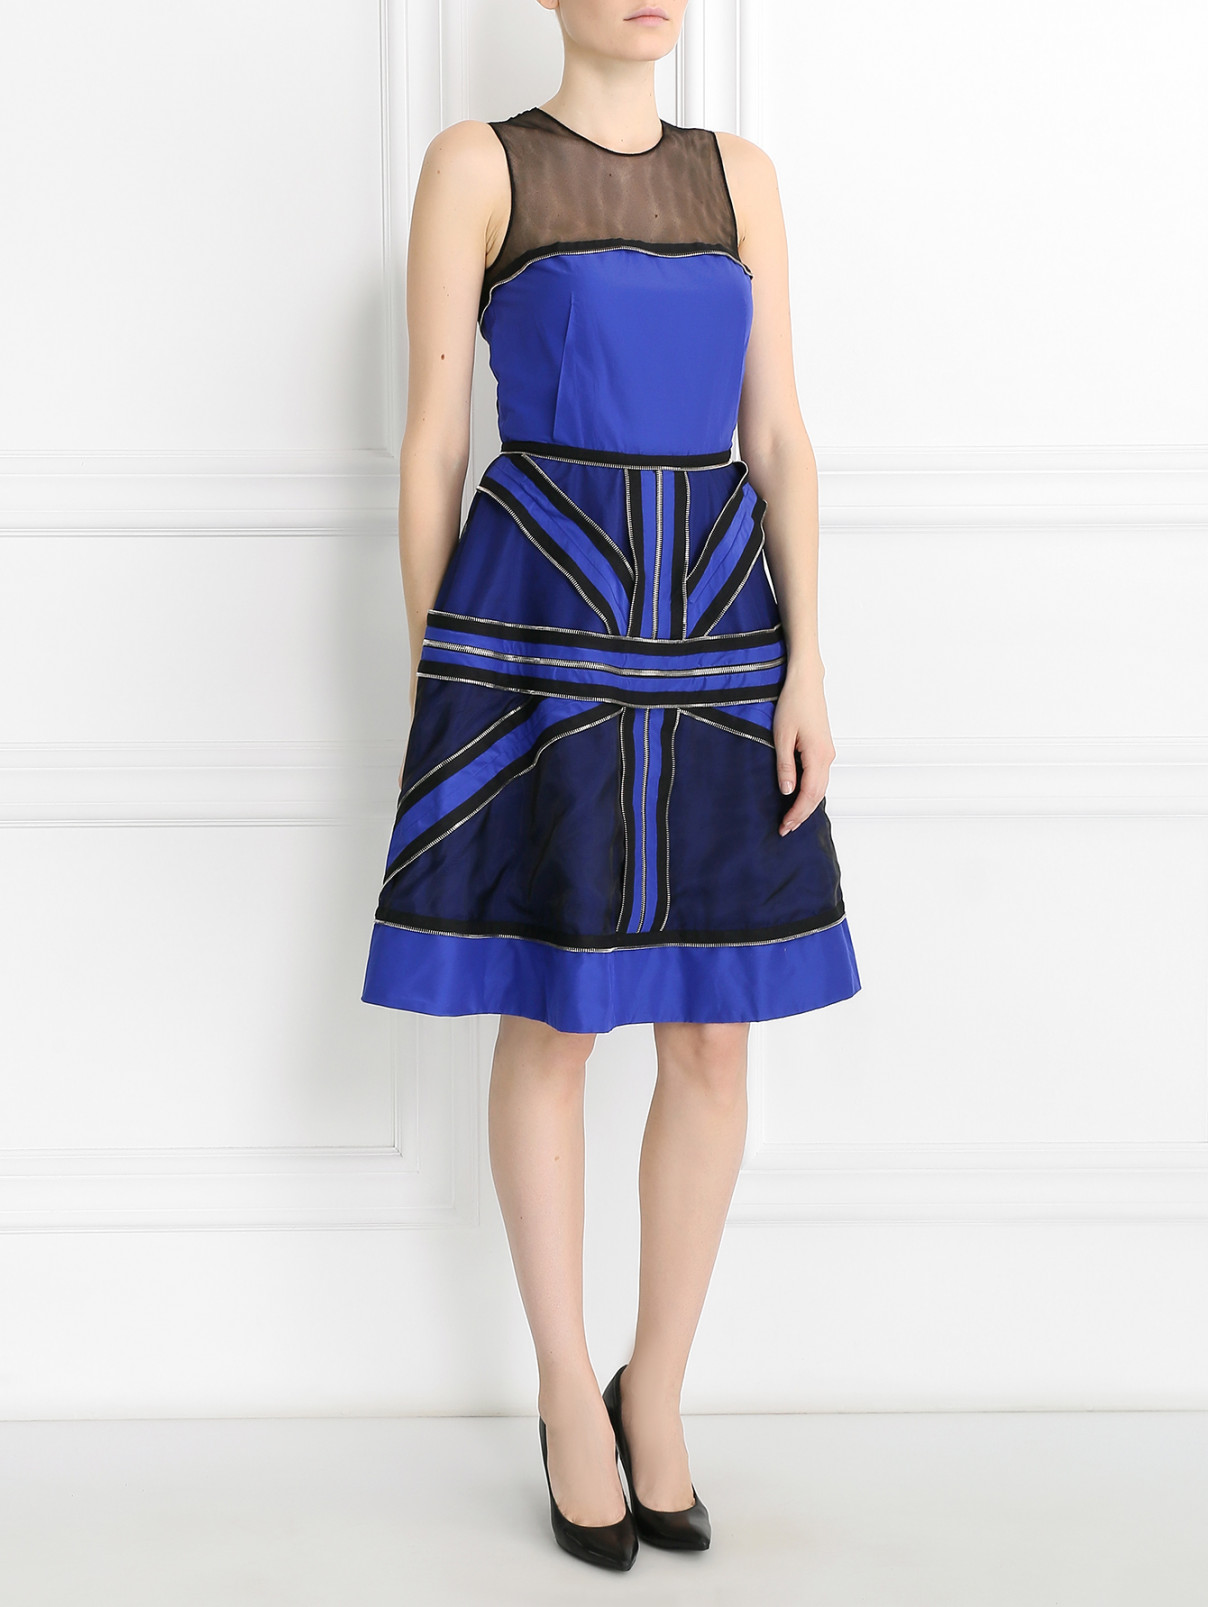 Платье из хлопка и шелка с металлической фурнитурой Jean Paul Gaultier  –  Модель Общий вид  – Цвет:  Синий